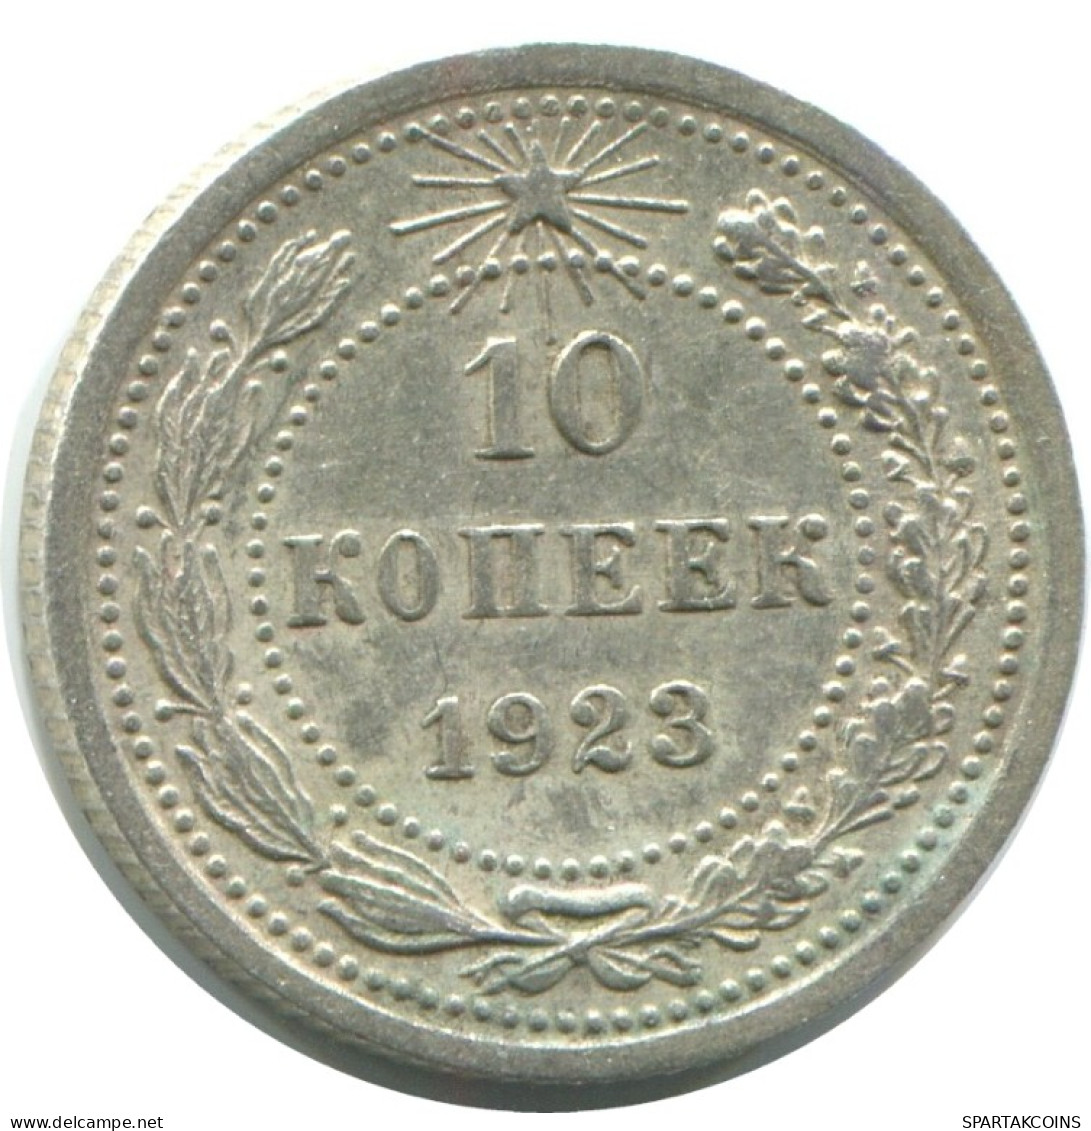 10 KOPEKS 1923 RUSSLAND RUSSIA RSFSR SILBER Münze HIGH GRADE #AE927.4.D.A - Rusland